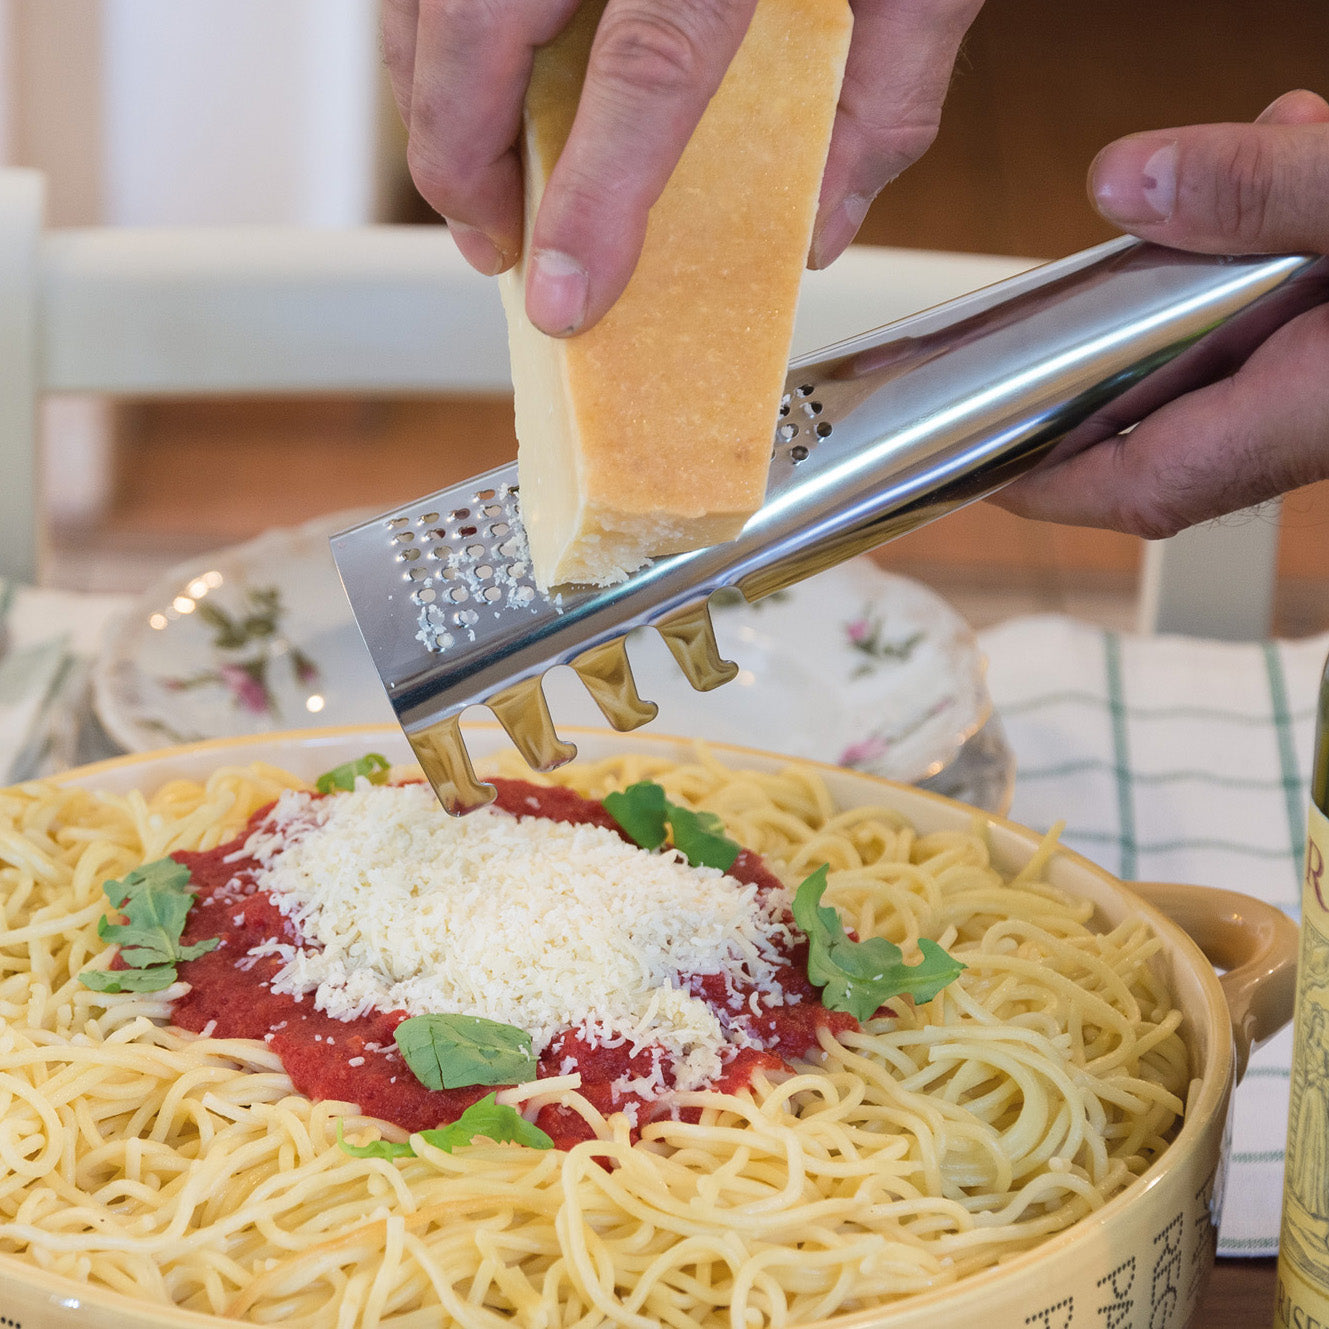 Spaghetti ladle with grater 'Parmigiano Reggiano'